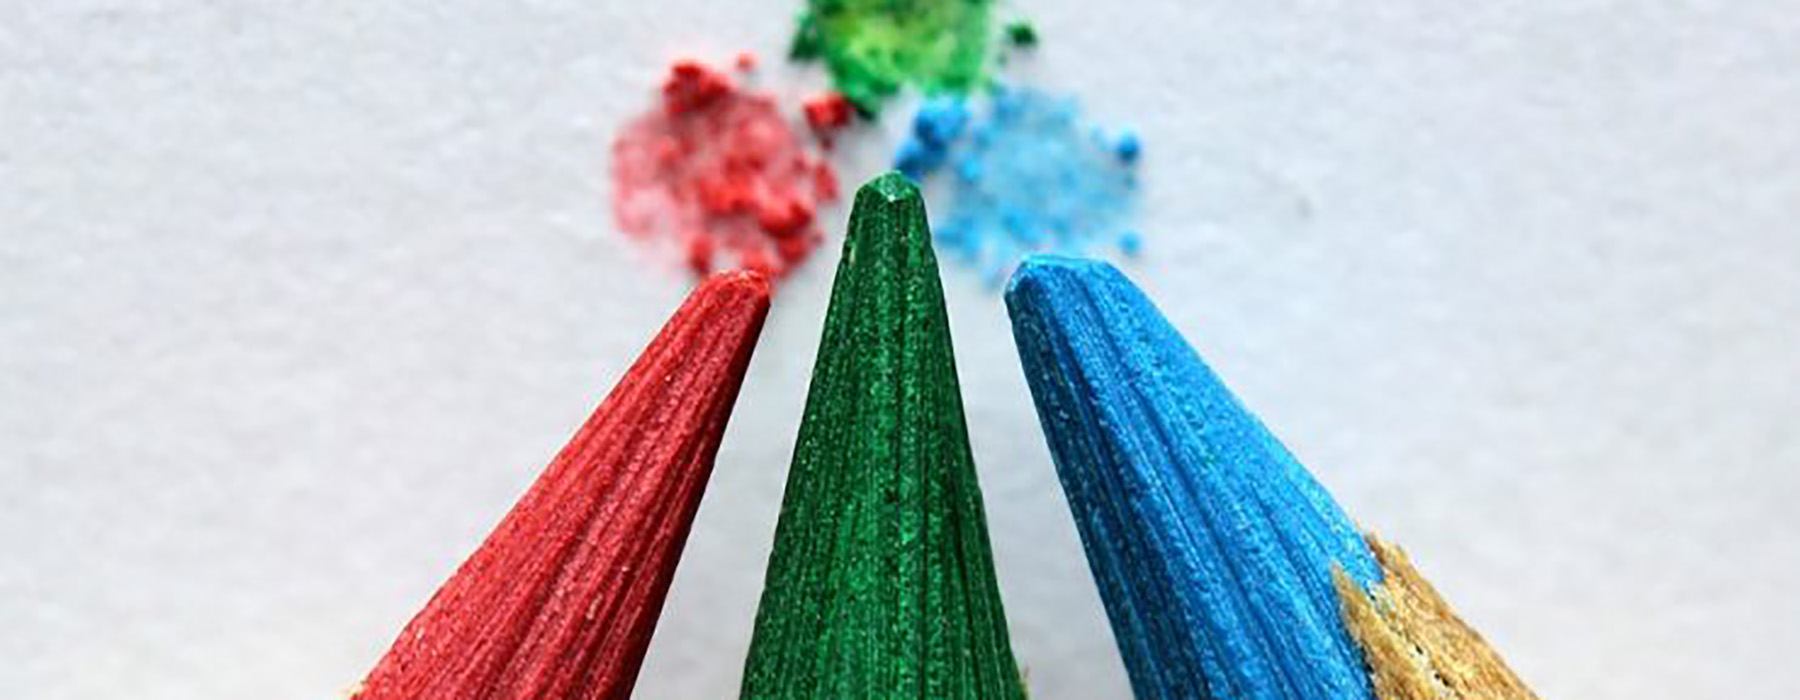 Tre punte di matite colorate rossa, verde e azzurra